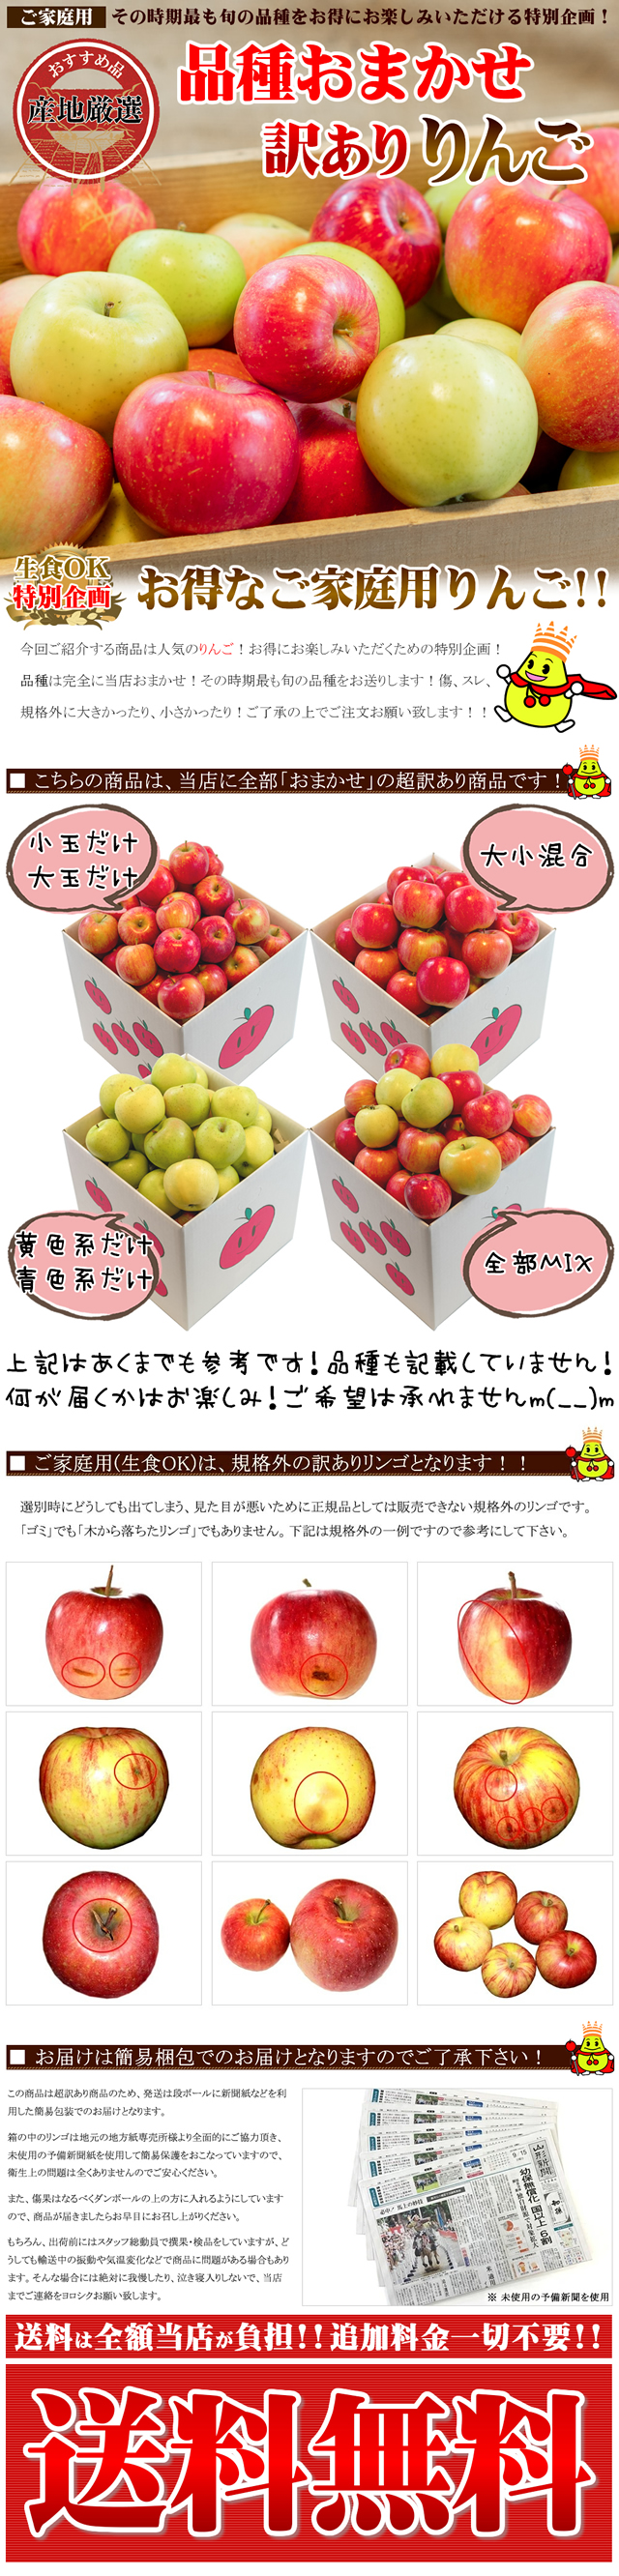 注文割引 期間限定 青森県産 ふじ りんご 家庭用 6~8玉 ⑲